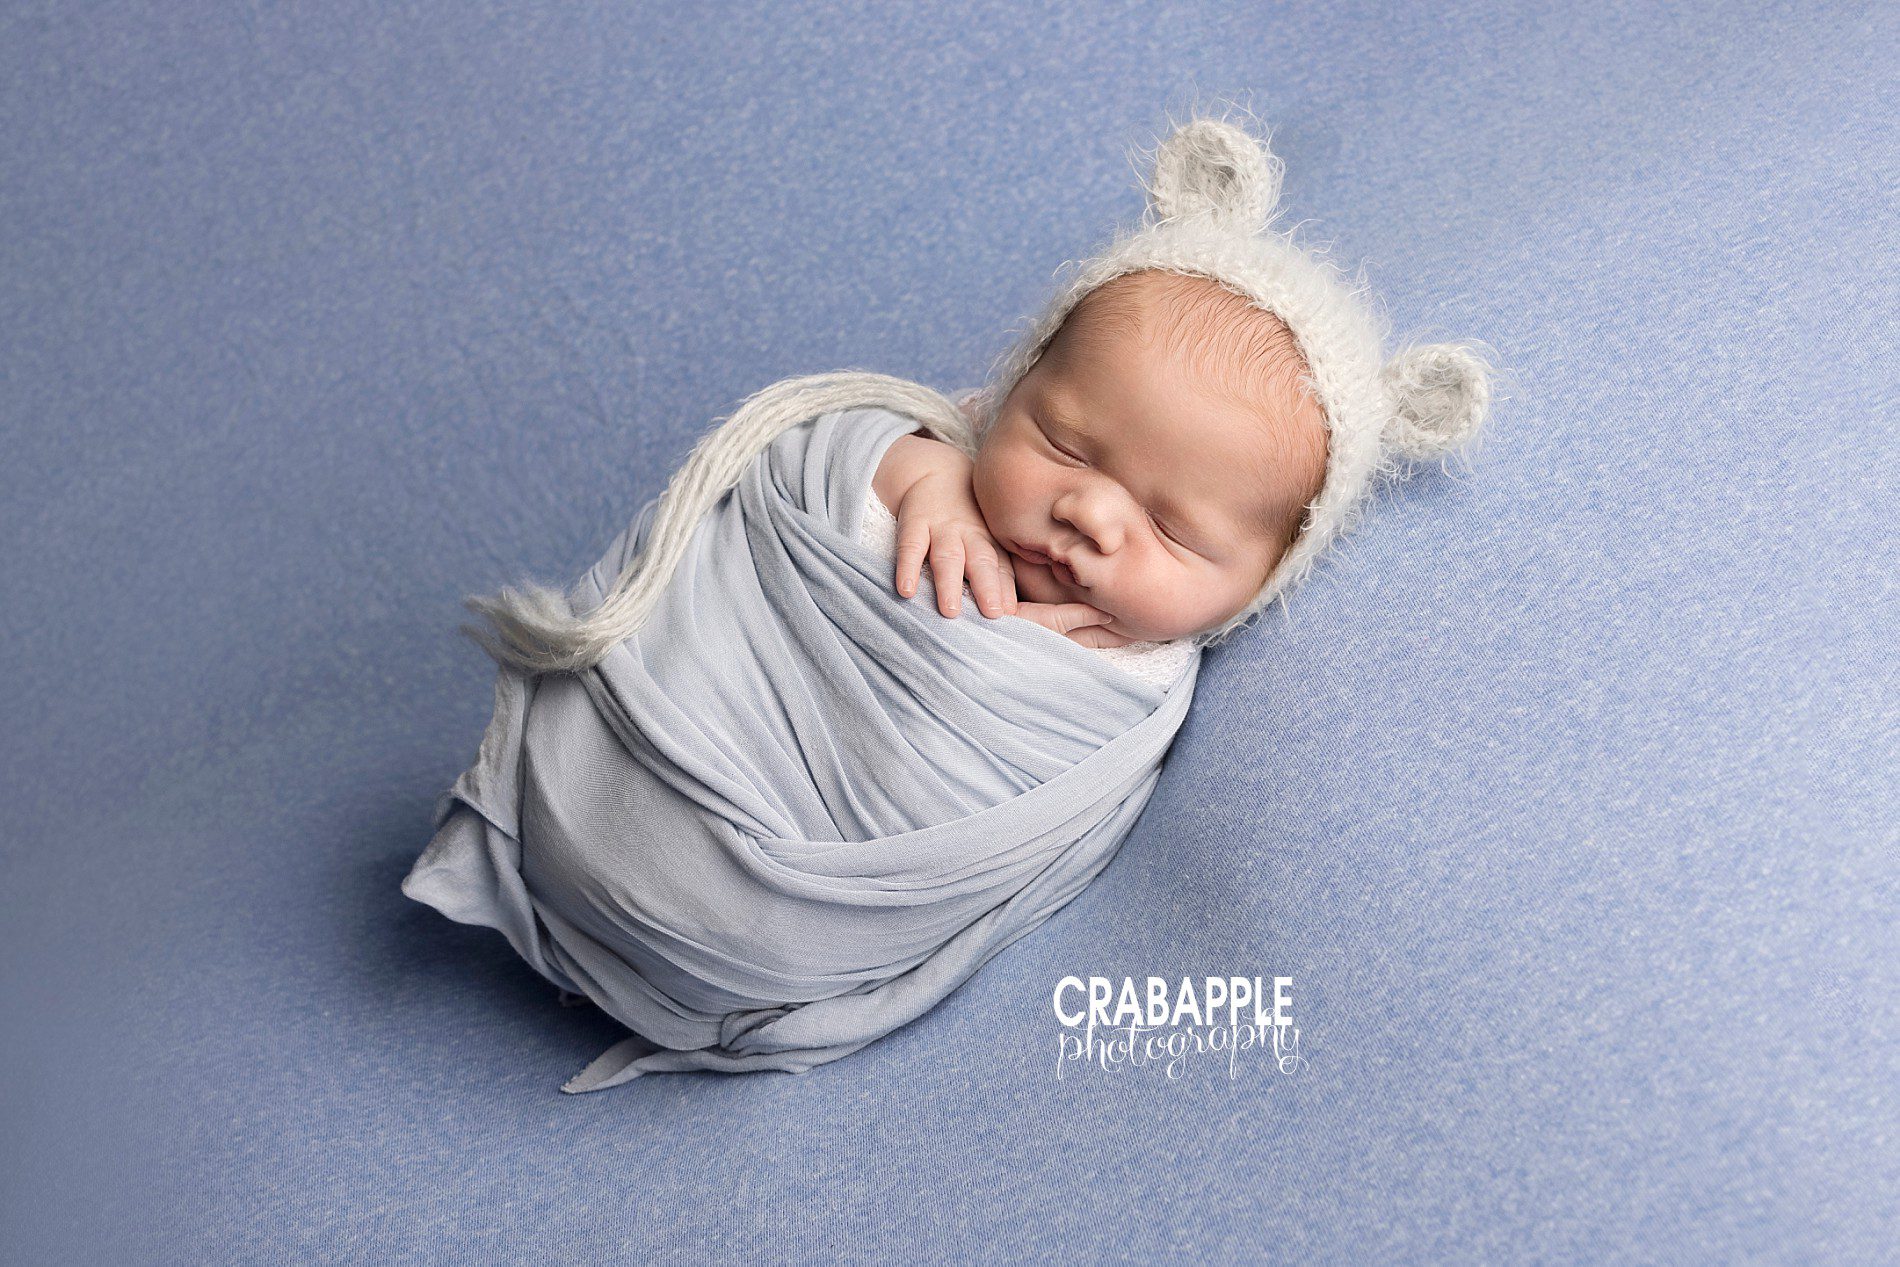 cute ideas for newborn photos using blue